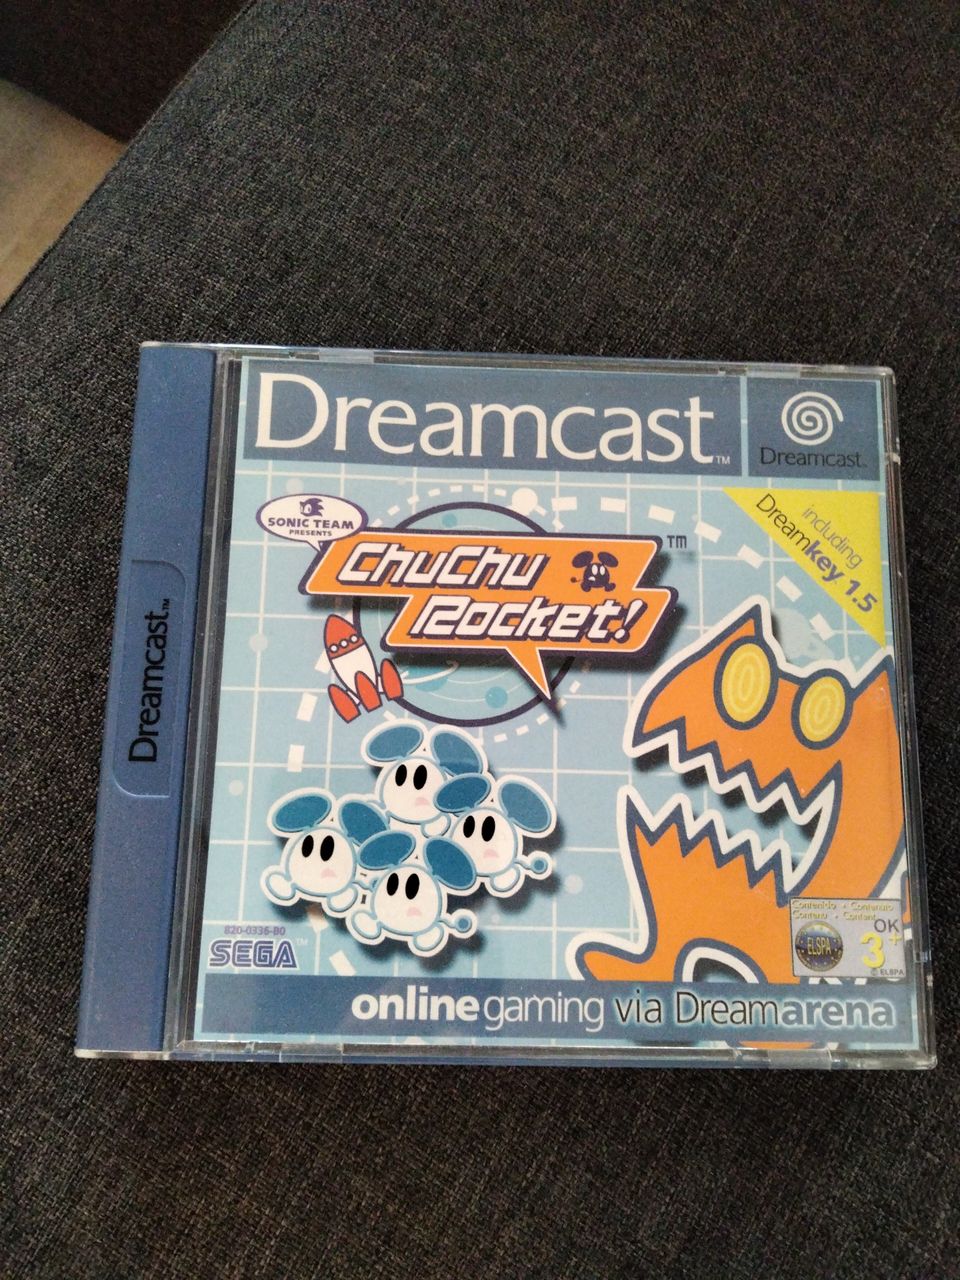 Dreamcast ChuChu Rocket!